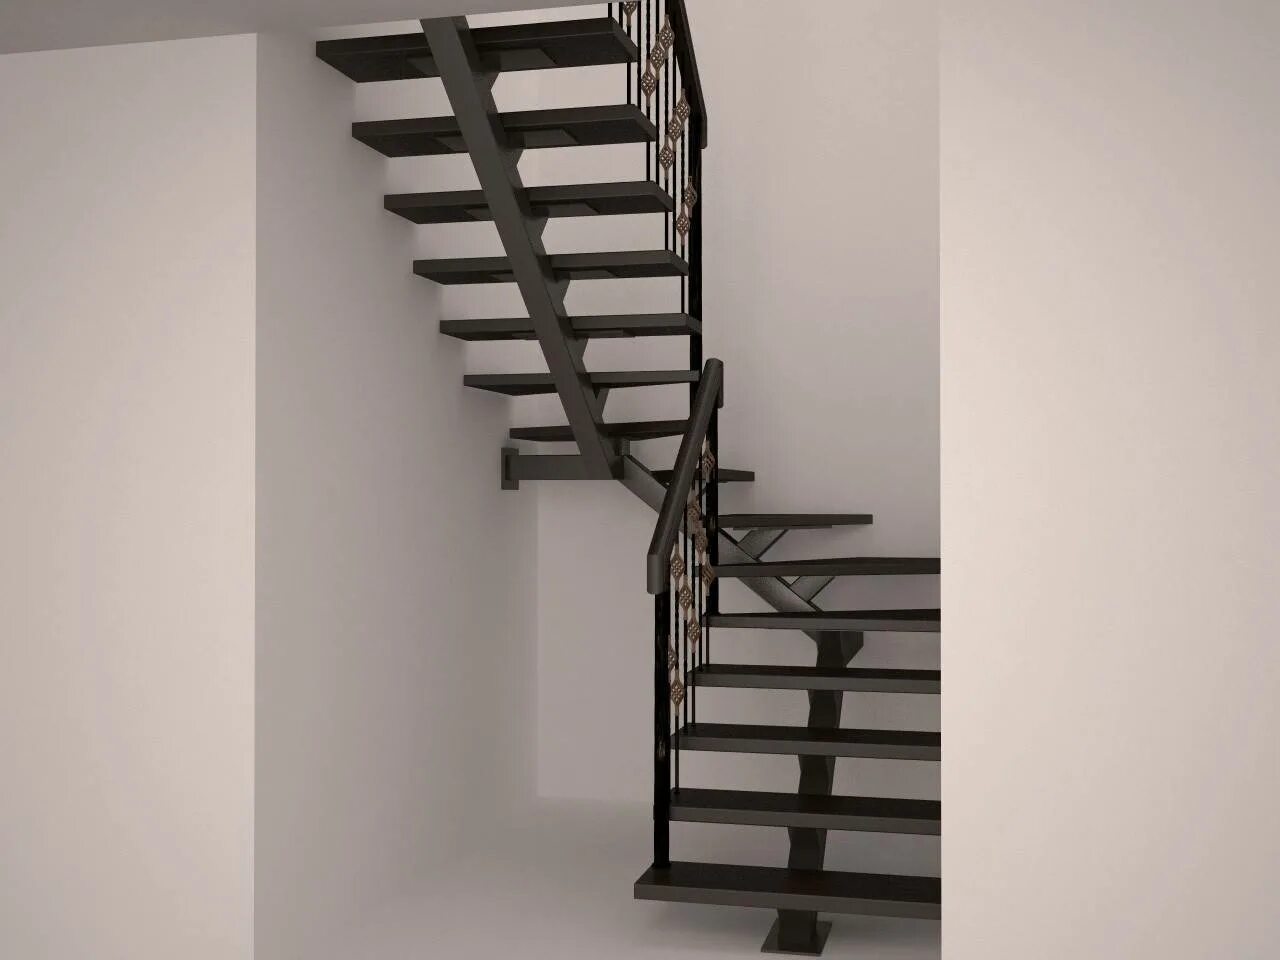 Лестница на металлическом монокосоуре с забежными ступенями. Лестница п-образная с забежными ступенями на металлическом каркасе. Лестница на монокосоуре из металла с забежными ступенями. Лестница металлокаркас.